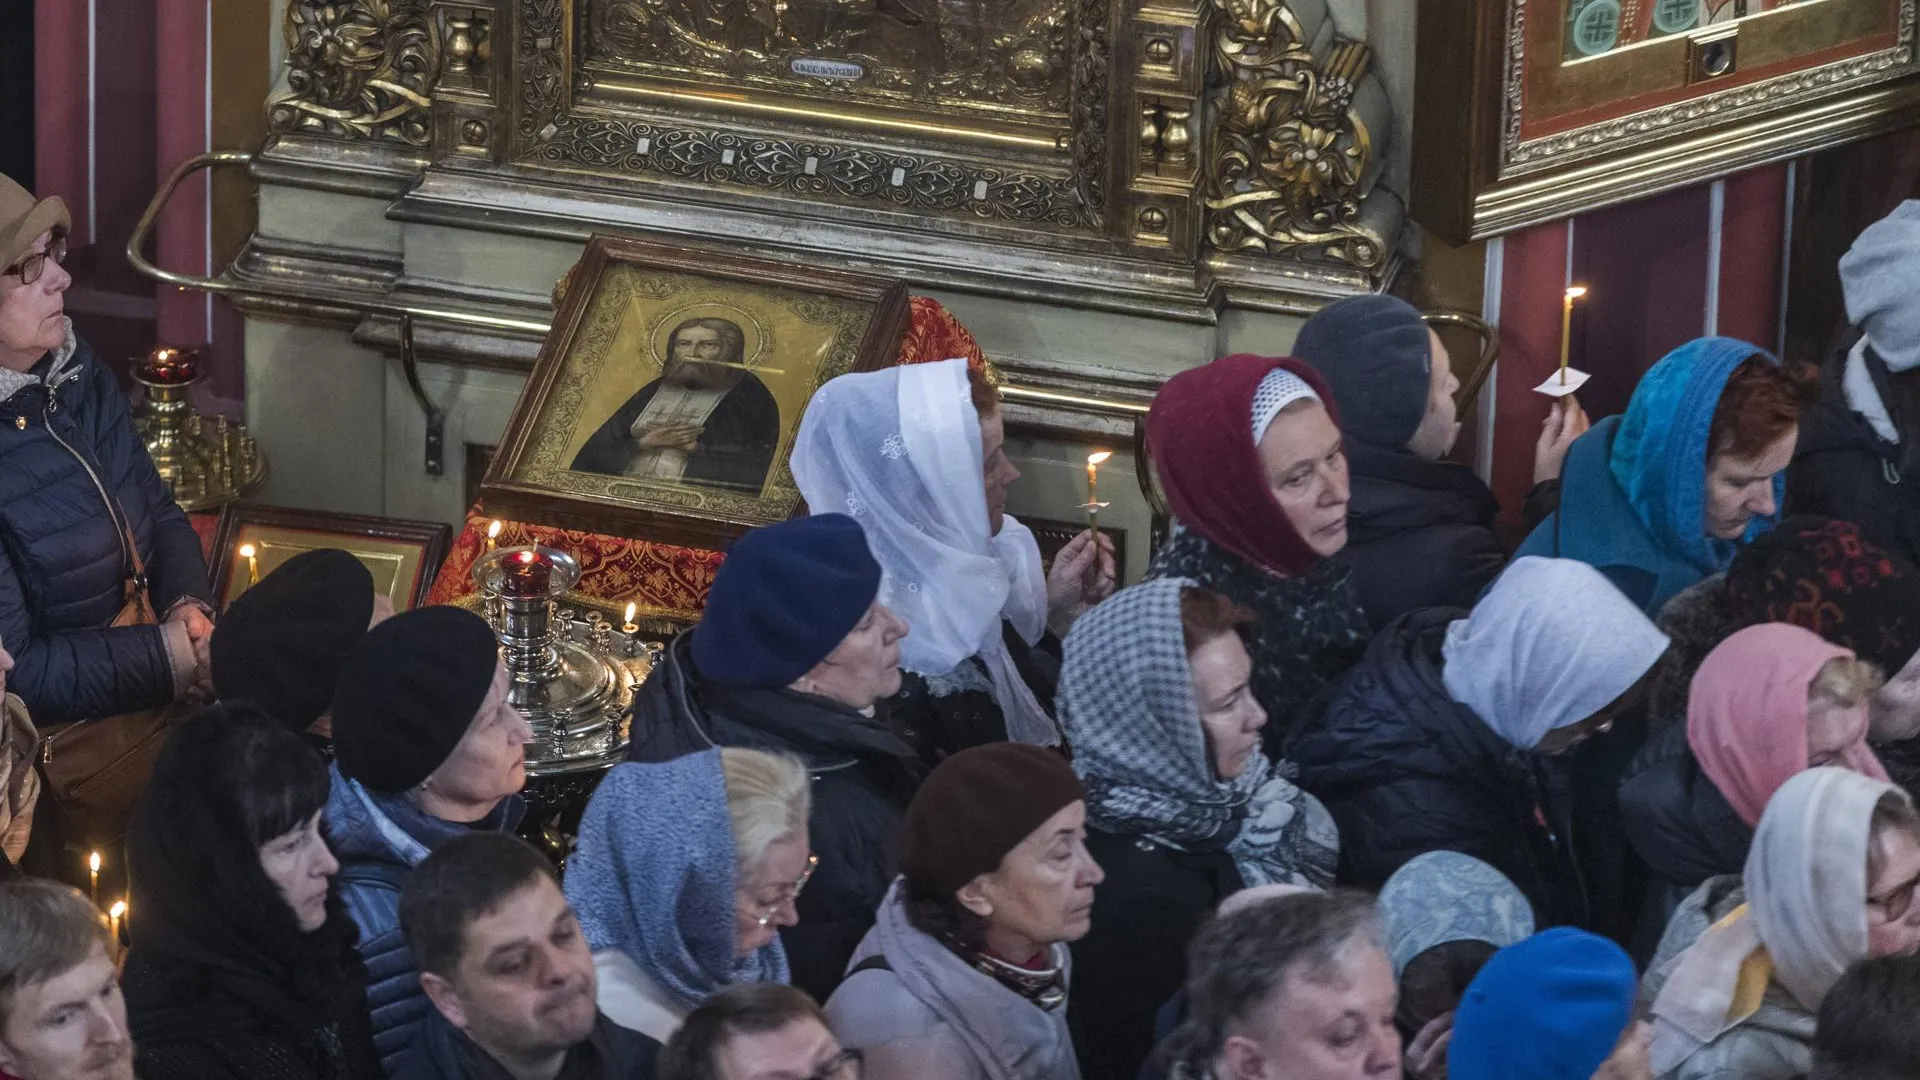 Прихожане Эстонской православной церкви Московского патриархата / Karli Saul / imago stock&people